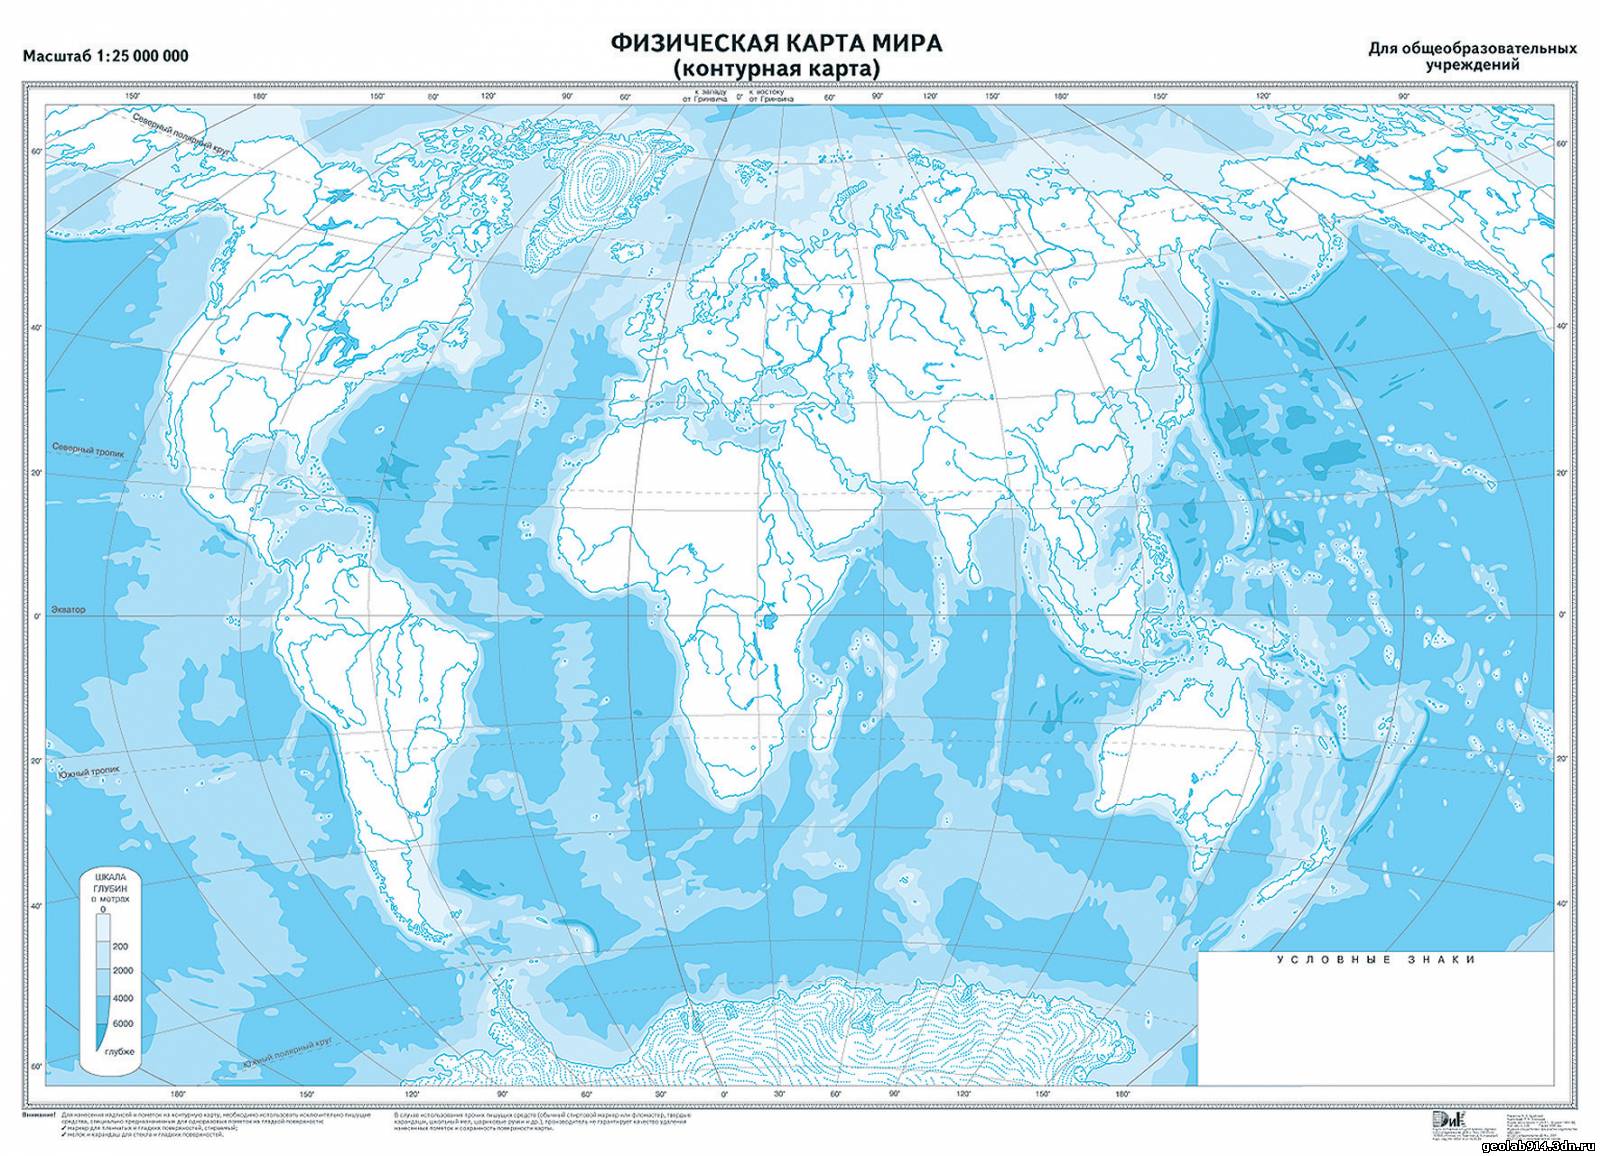 Ответы к уроку по географии мировой океан 7 класс